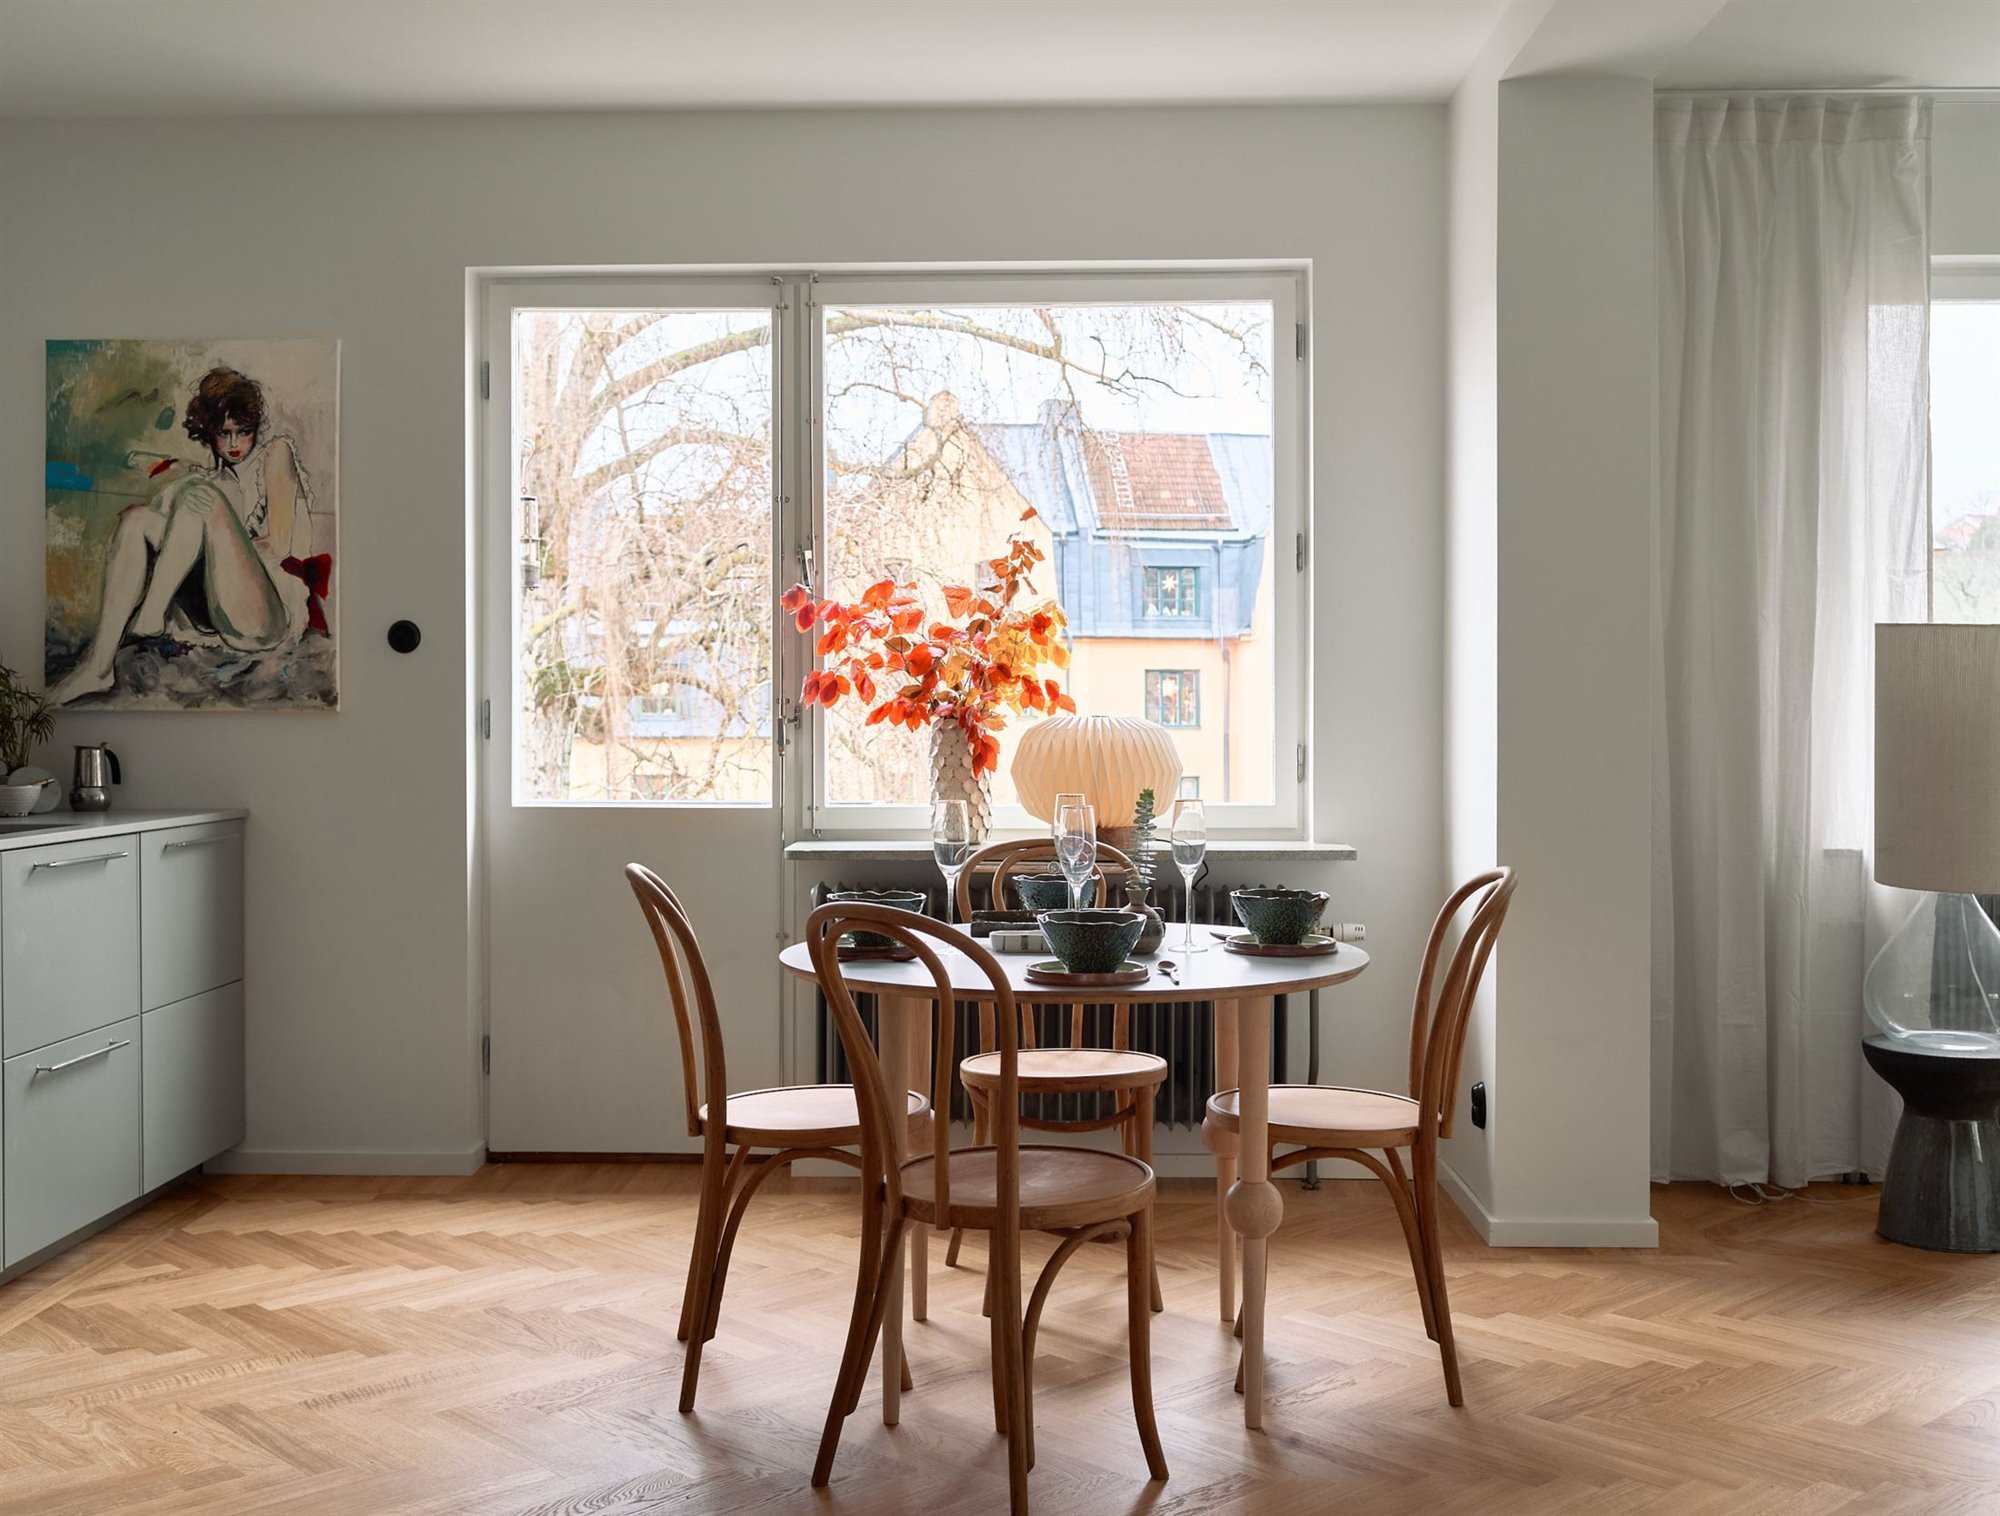 Piso en Suecia con interiores de estilo nordico comedor con mesa redonda y silla junto a la ventana